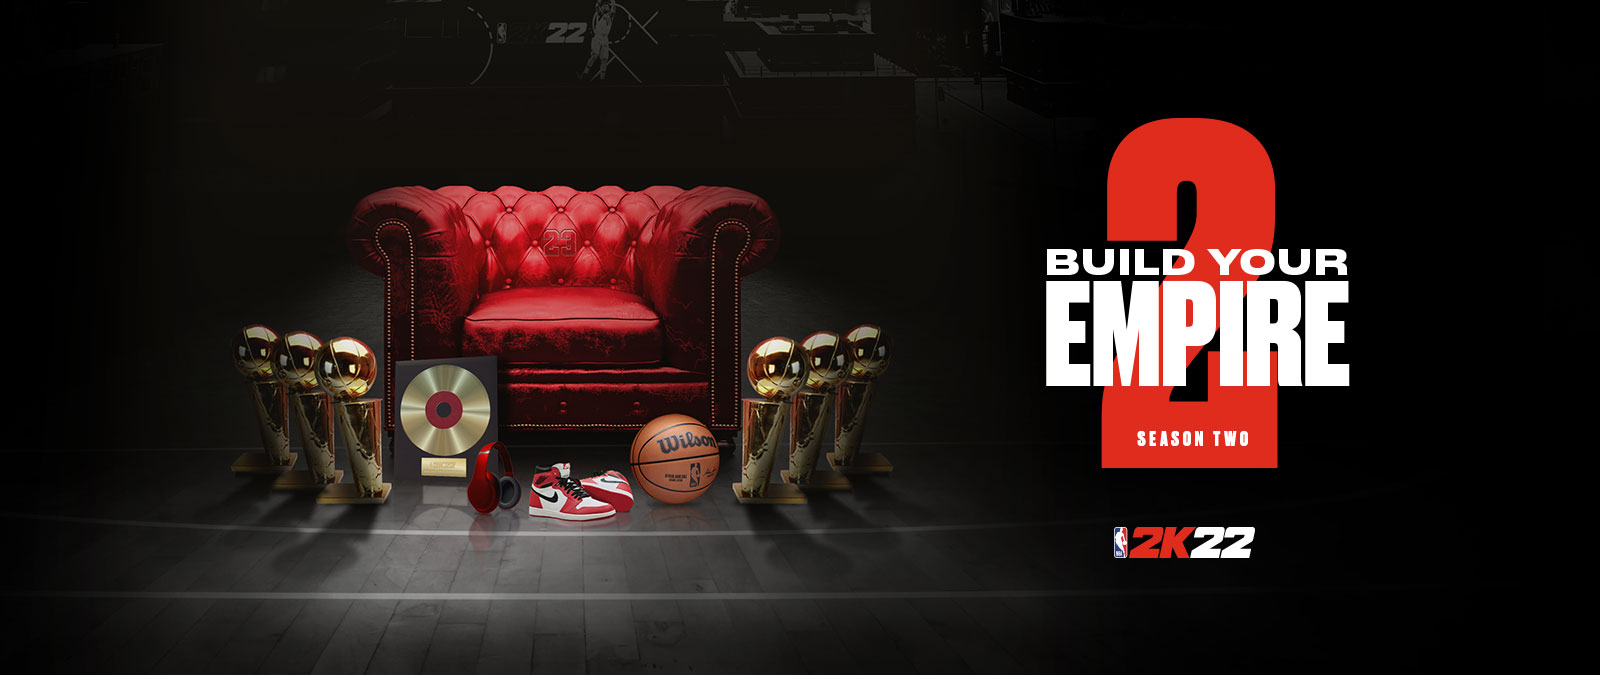 Bouw je eigen imperium in Season 2 van NBA 2K22: verschillende trofeeën rond een rode leren stoel.